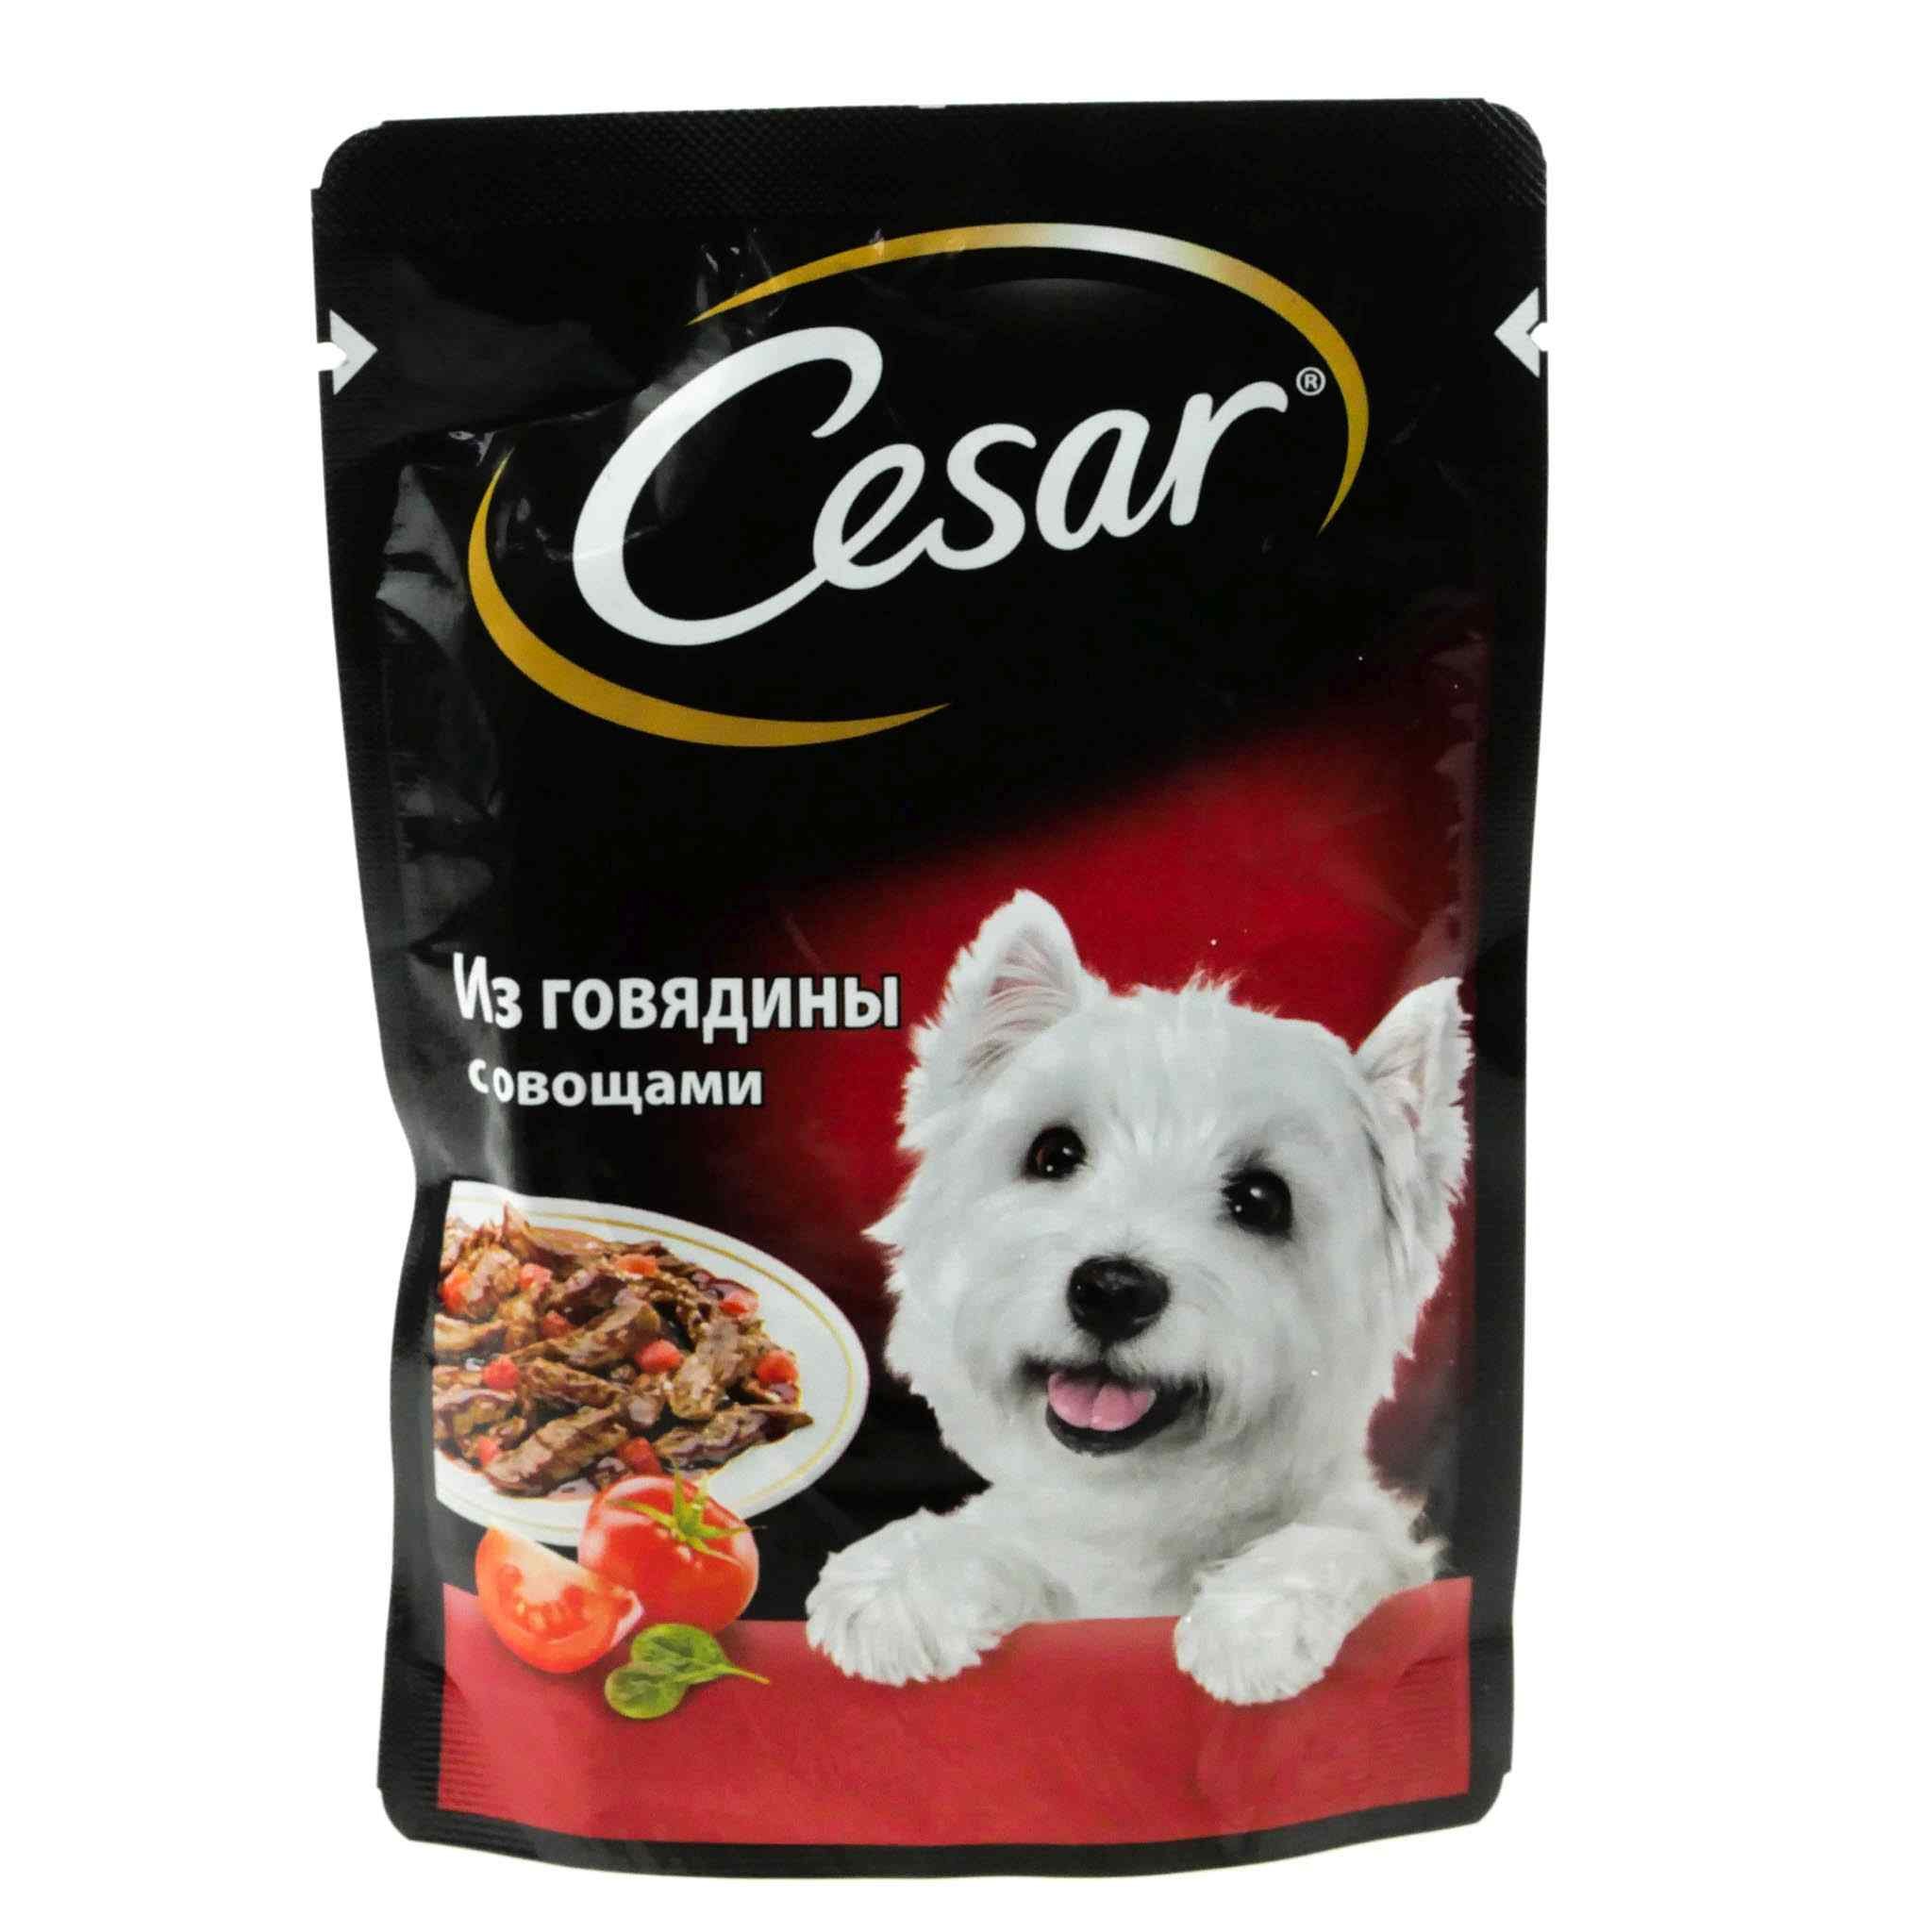 Корм для собак друг. Корм говядина с овощами Cesar 85г. Cesar корм для собак говядина с овощами 85г. Cesar корм для собак 85 г говядина.